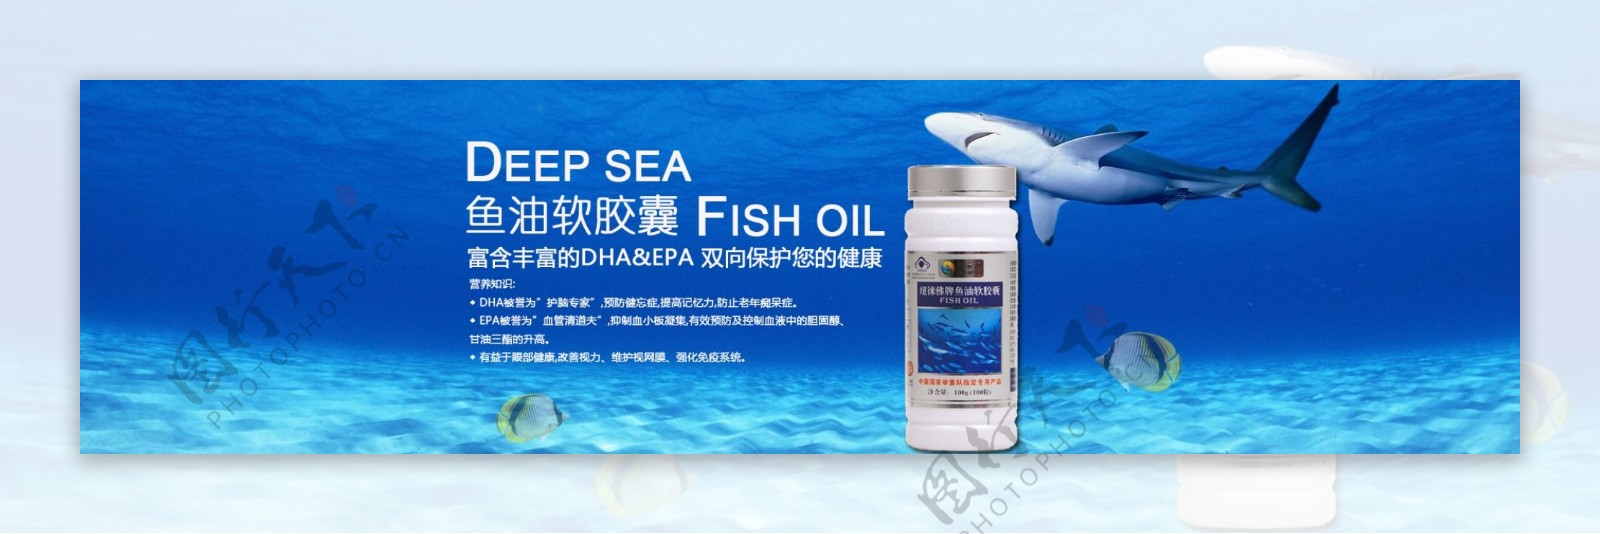 深海鱼油广告轮播图